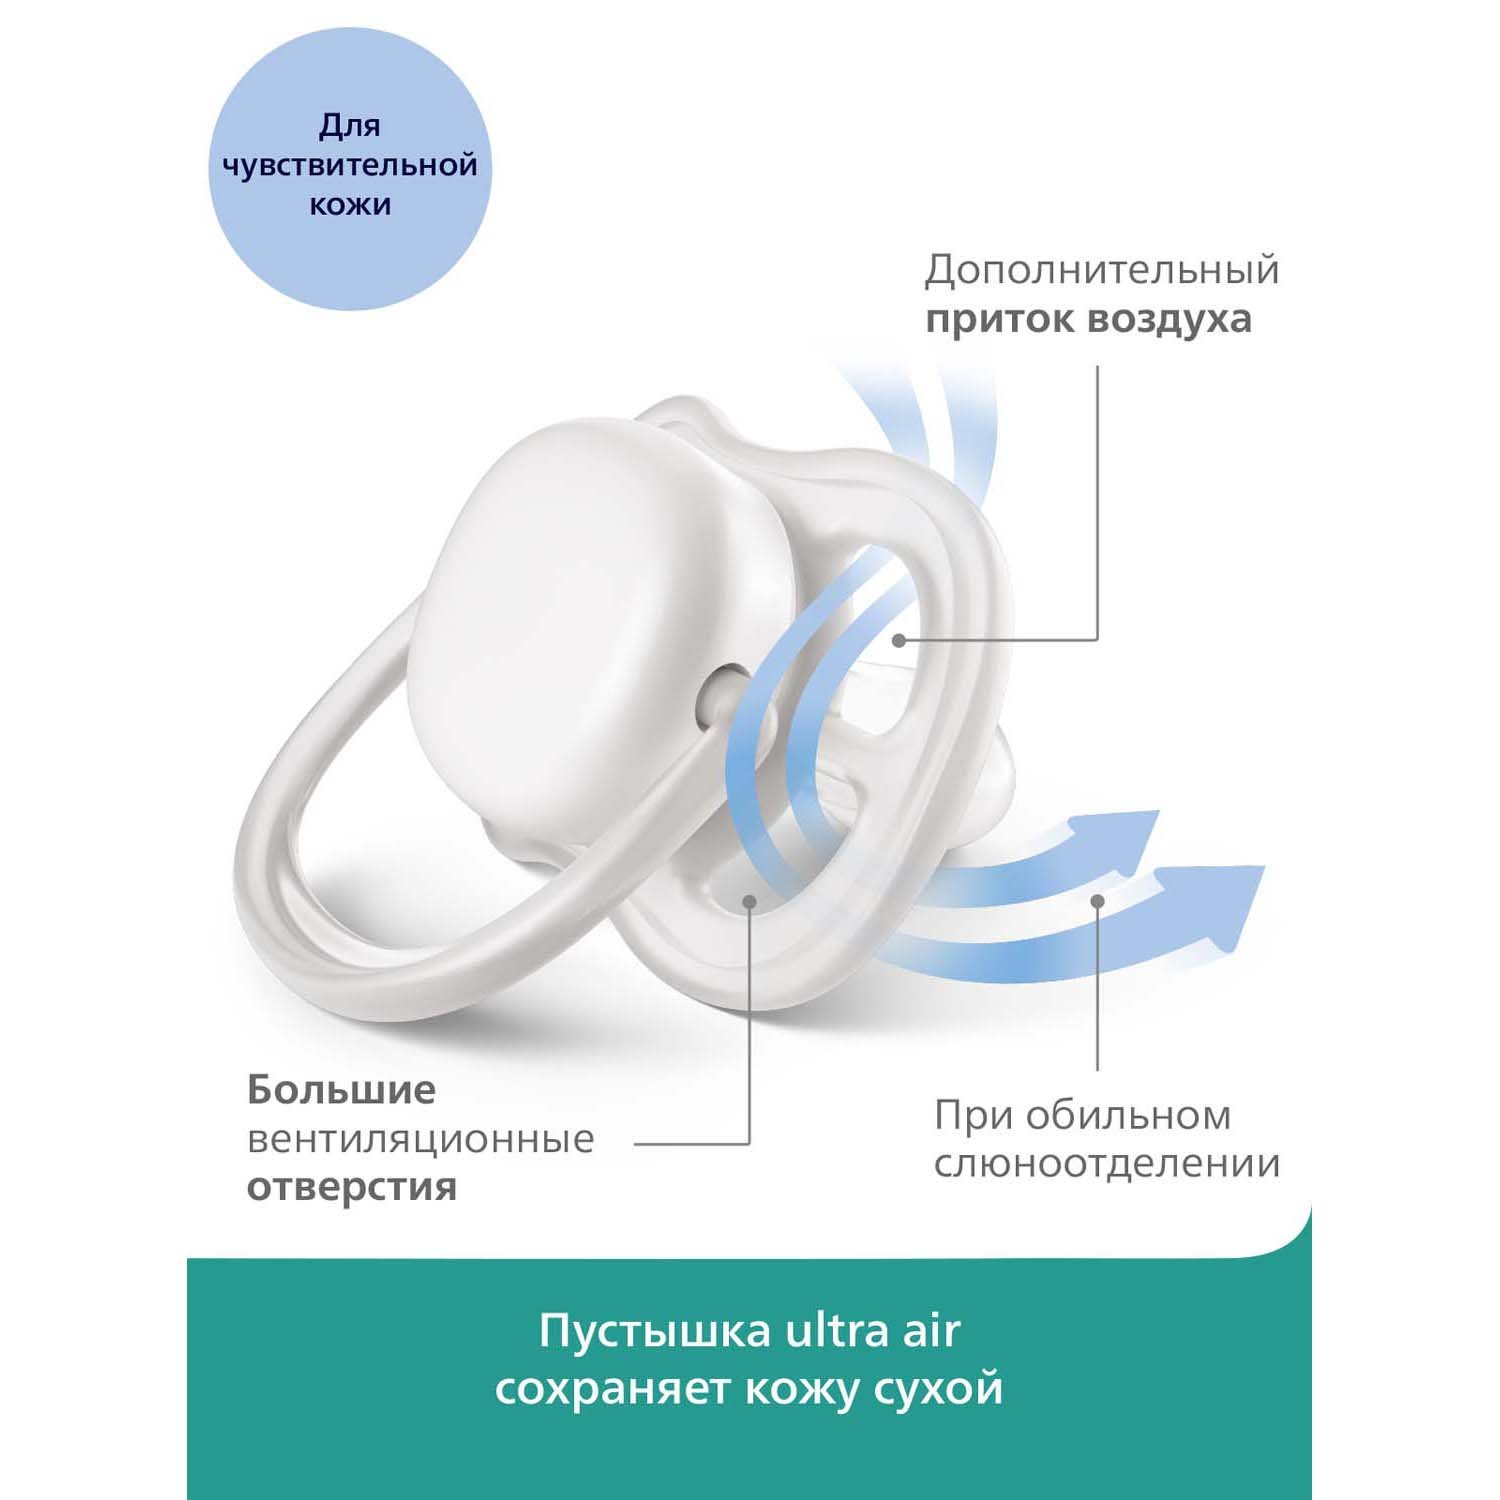 Пустышка Philips Avent ultra air с футляром для хранения и стерилизации 2шт 6-18 месяцев SCF085/03